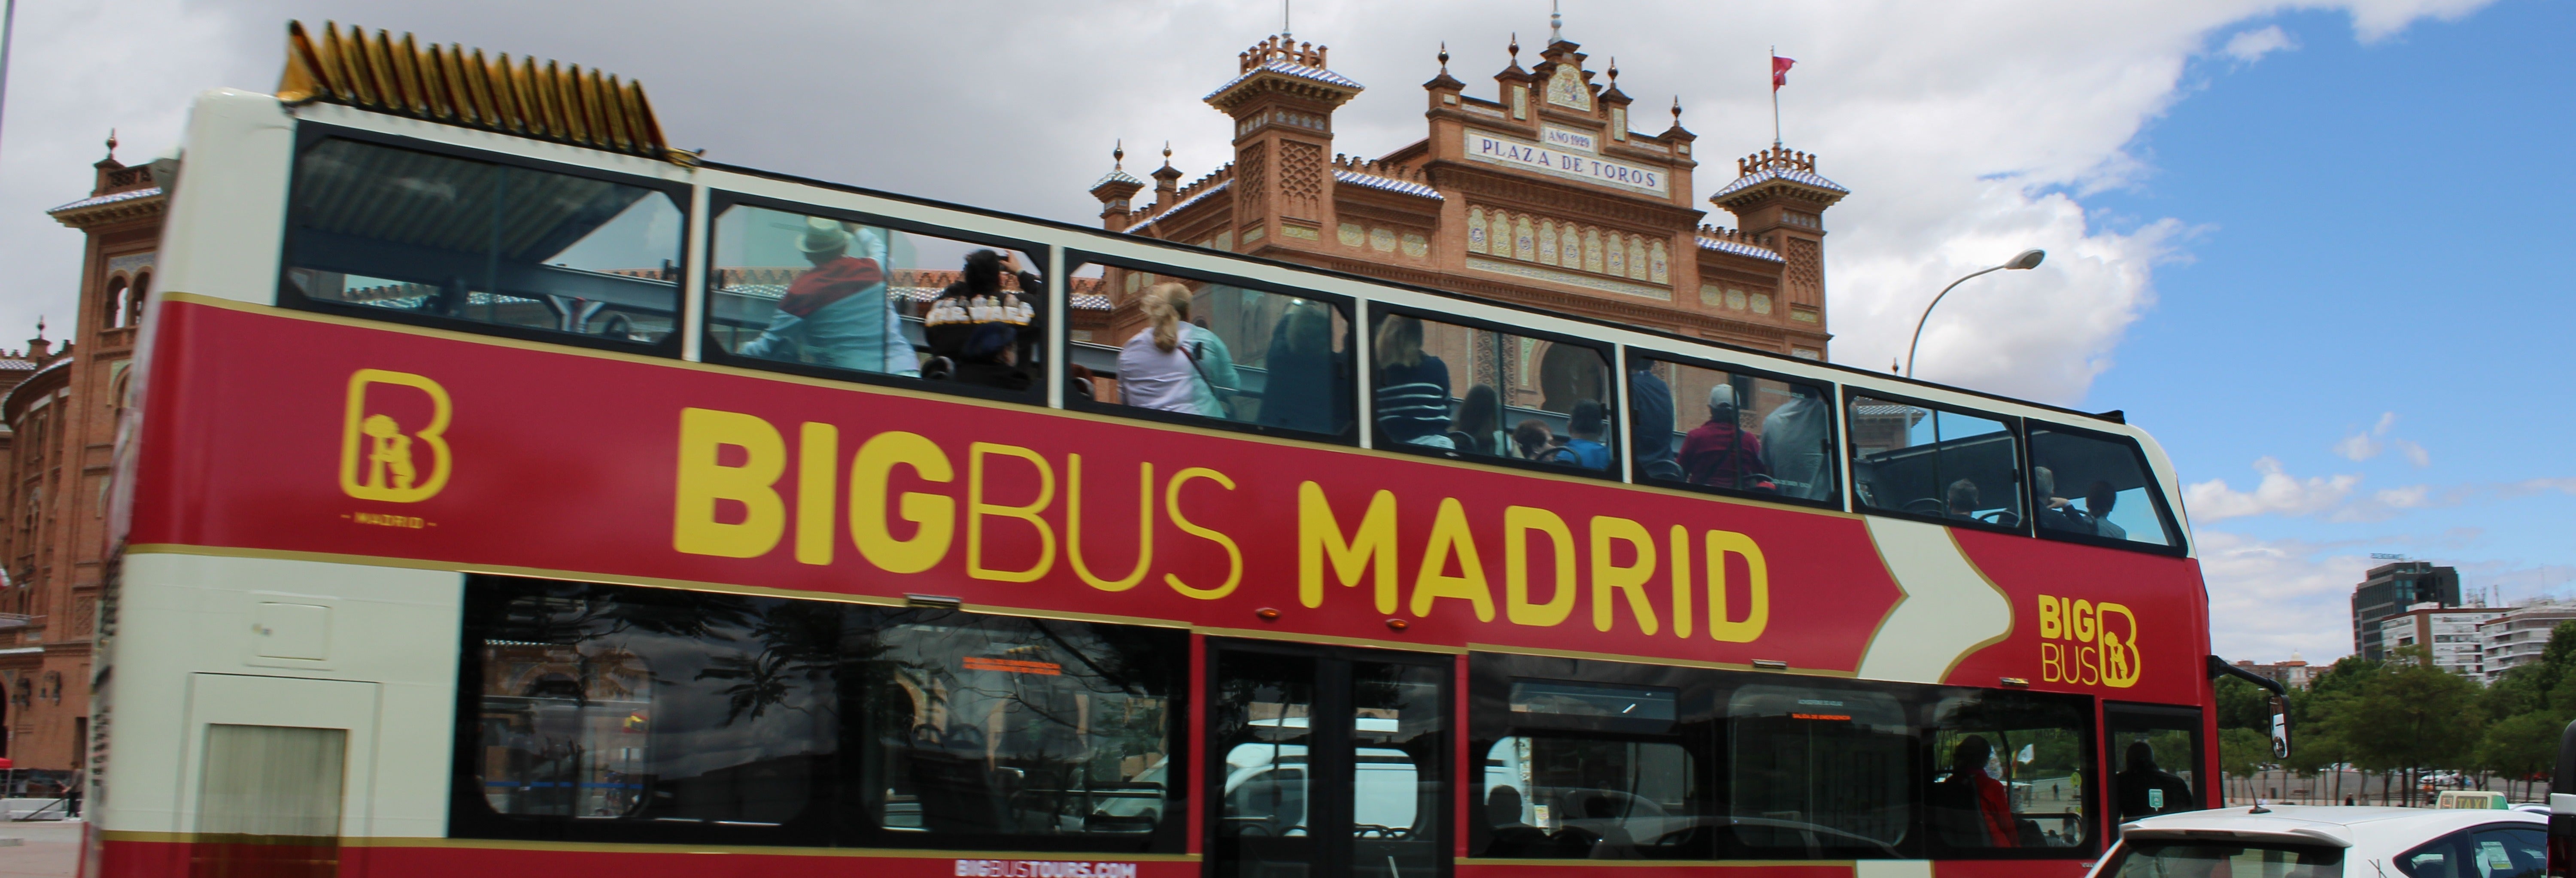 Tour panorâmico por Madrid